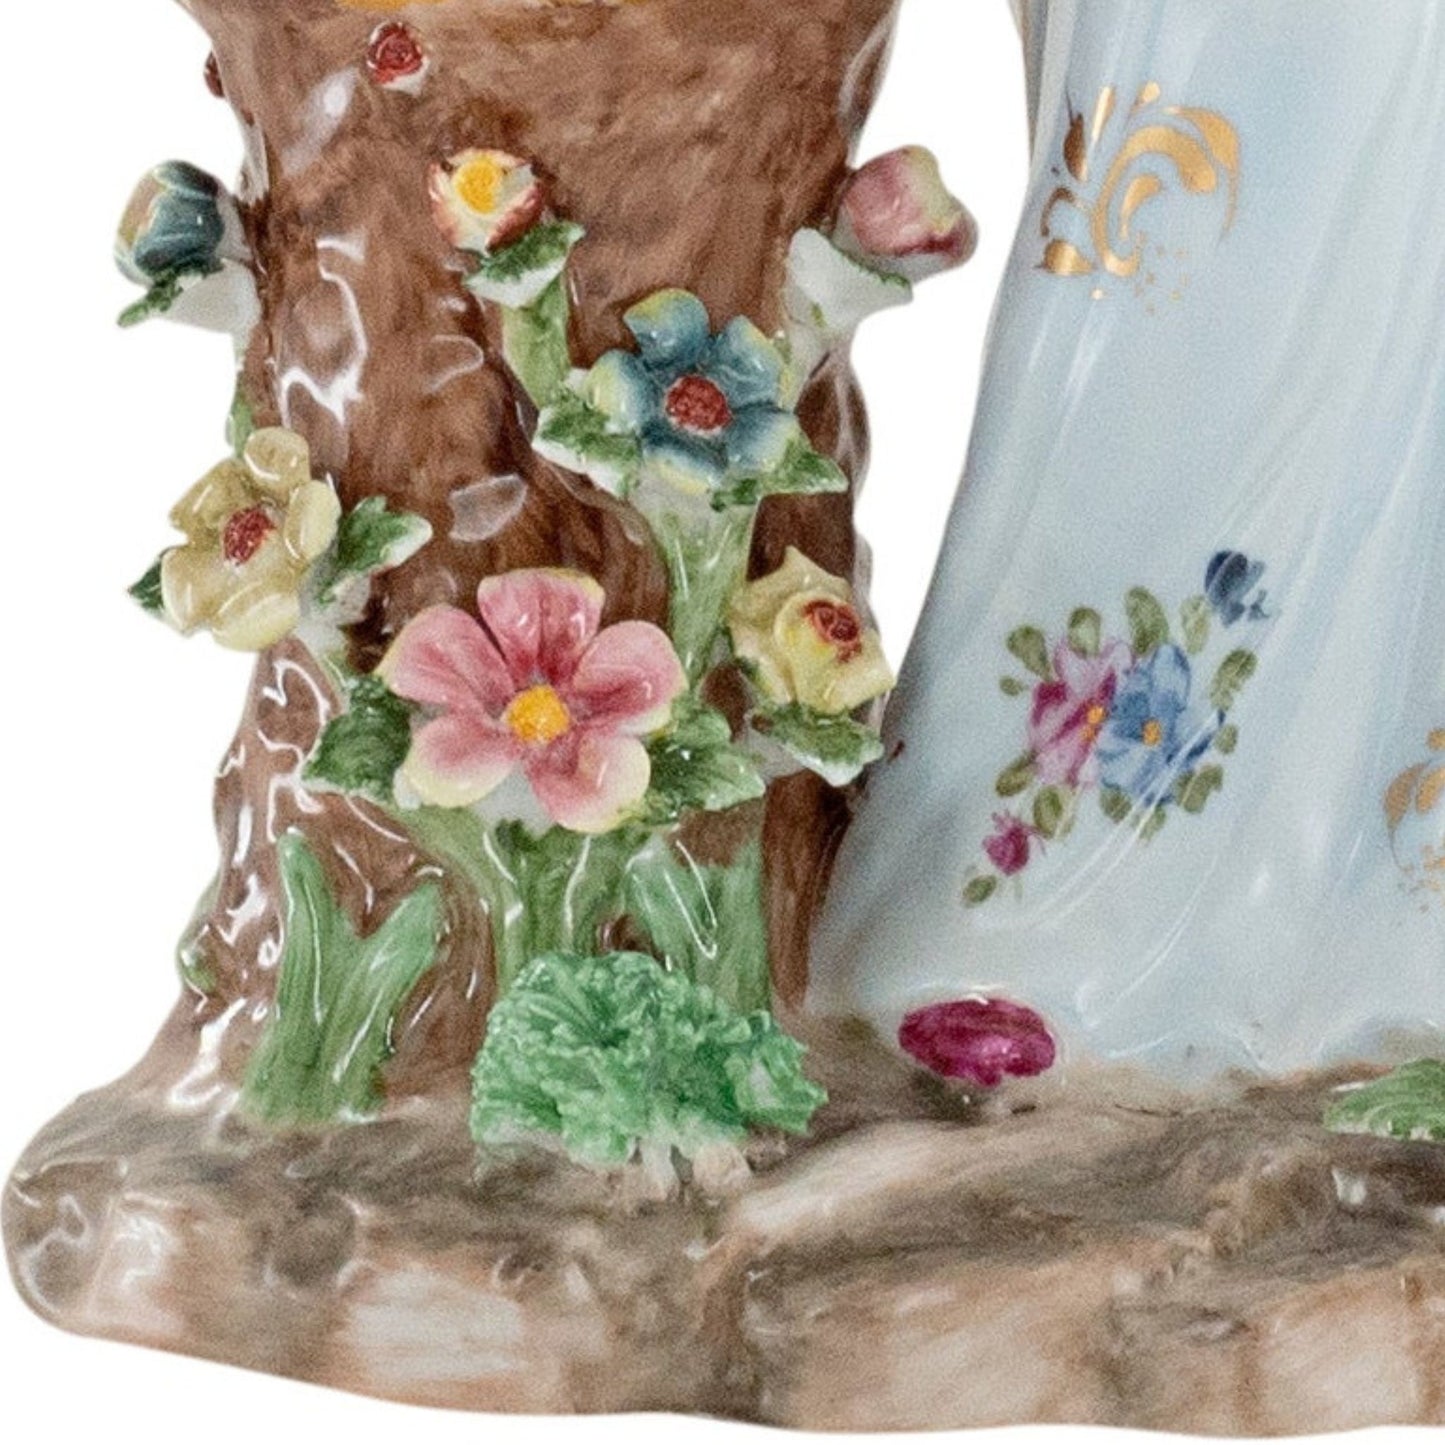 Lady Figurine Vase